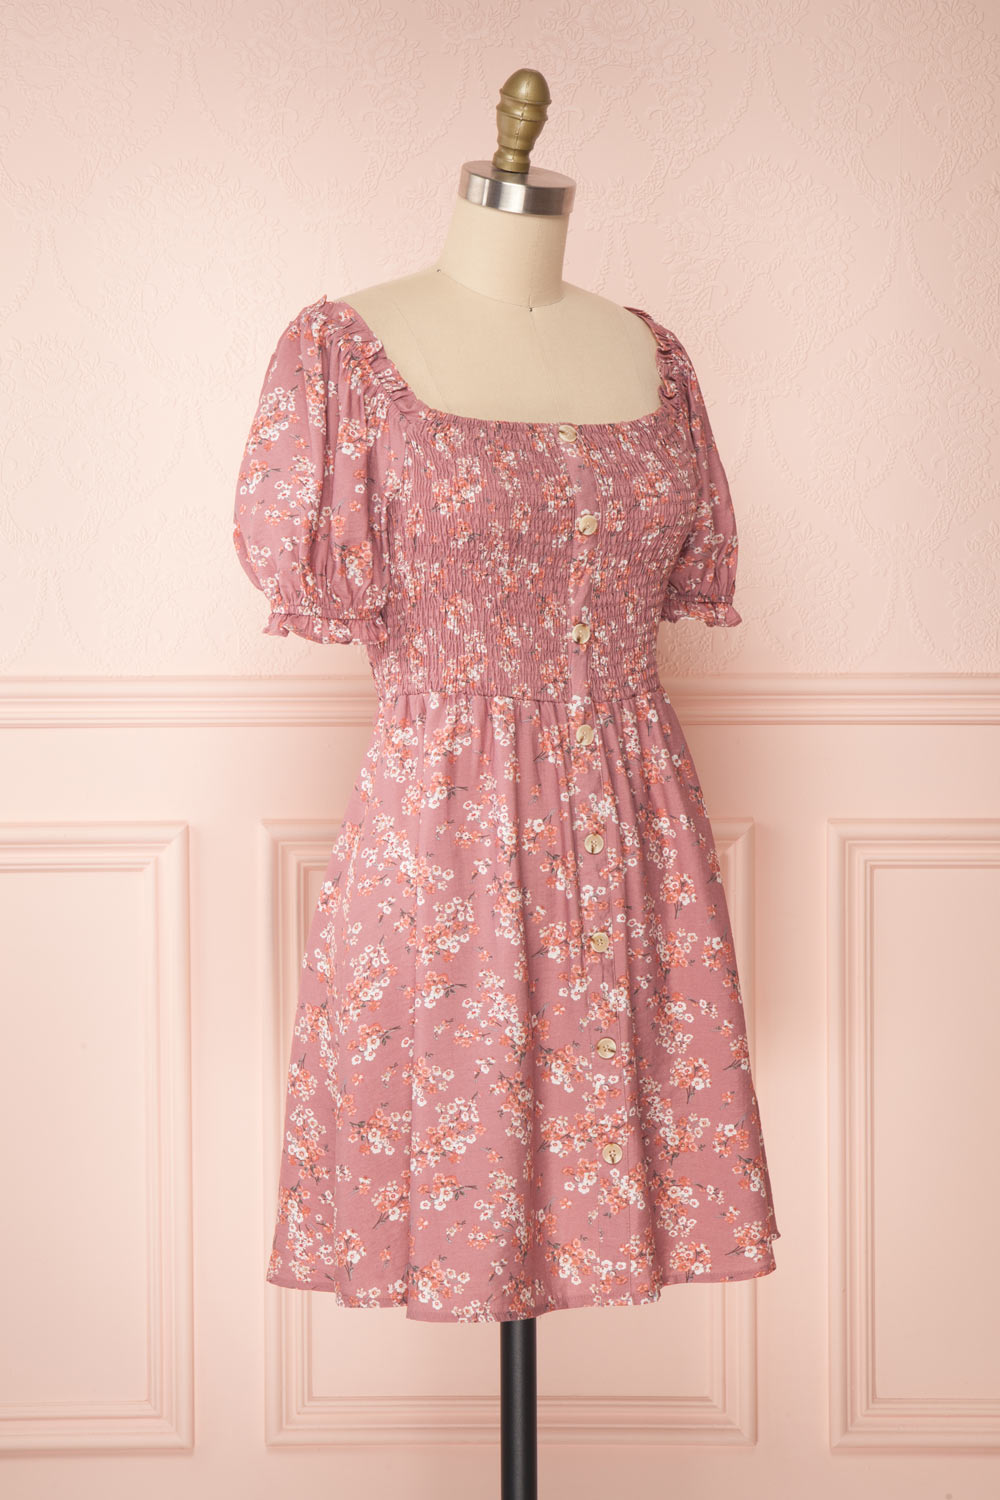 Eydis Mauve Lilac Pink Floral Short Dress | Boutique 1861 side view